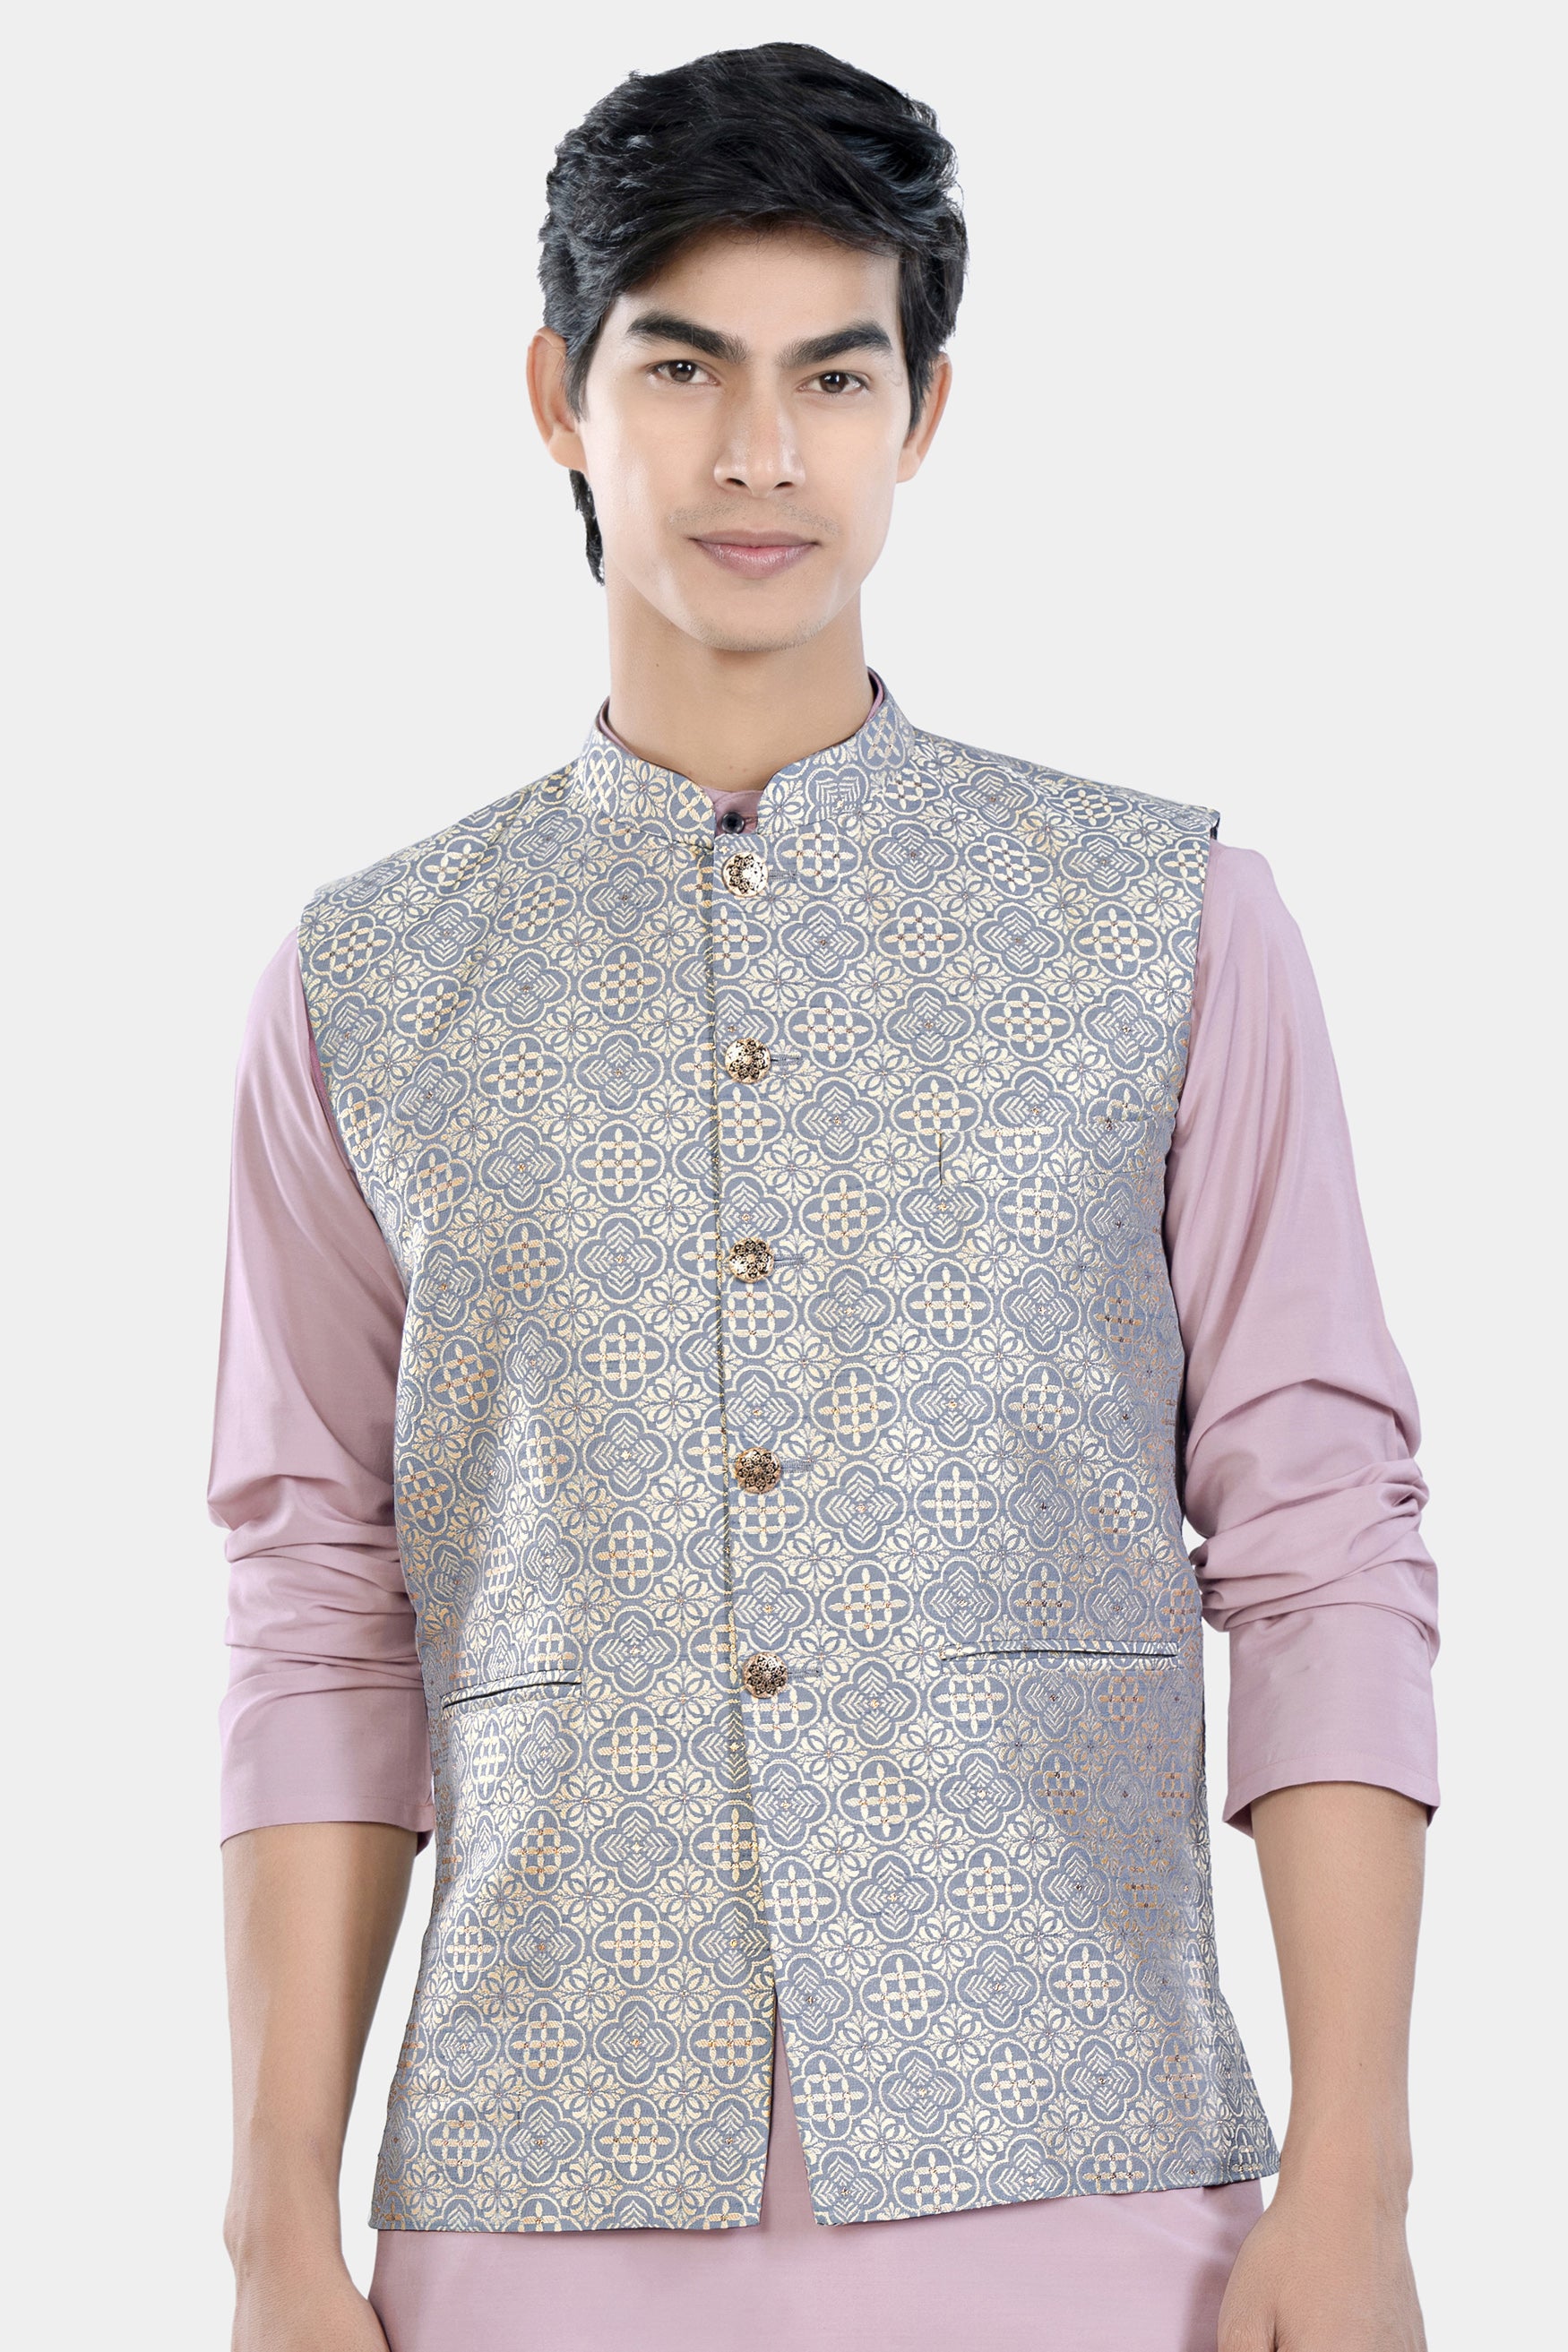 S-XXL Party Wear Men's Designer Nehru Jacket at Rs 400/piece in Meerut |  ID: 14482727055